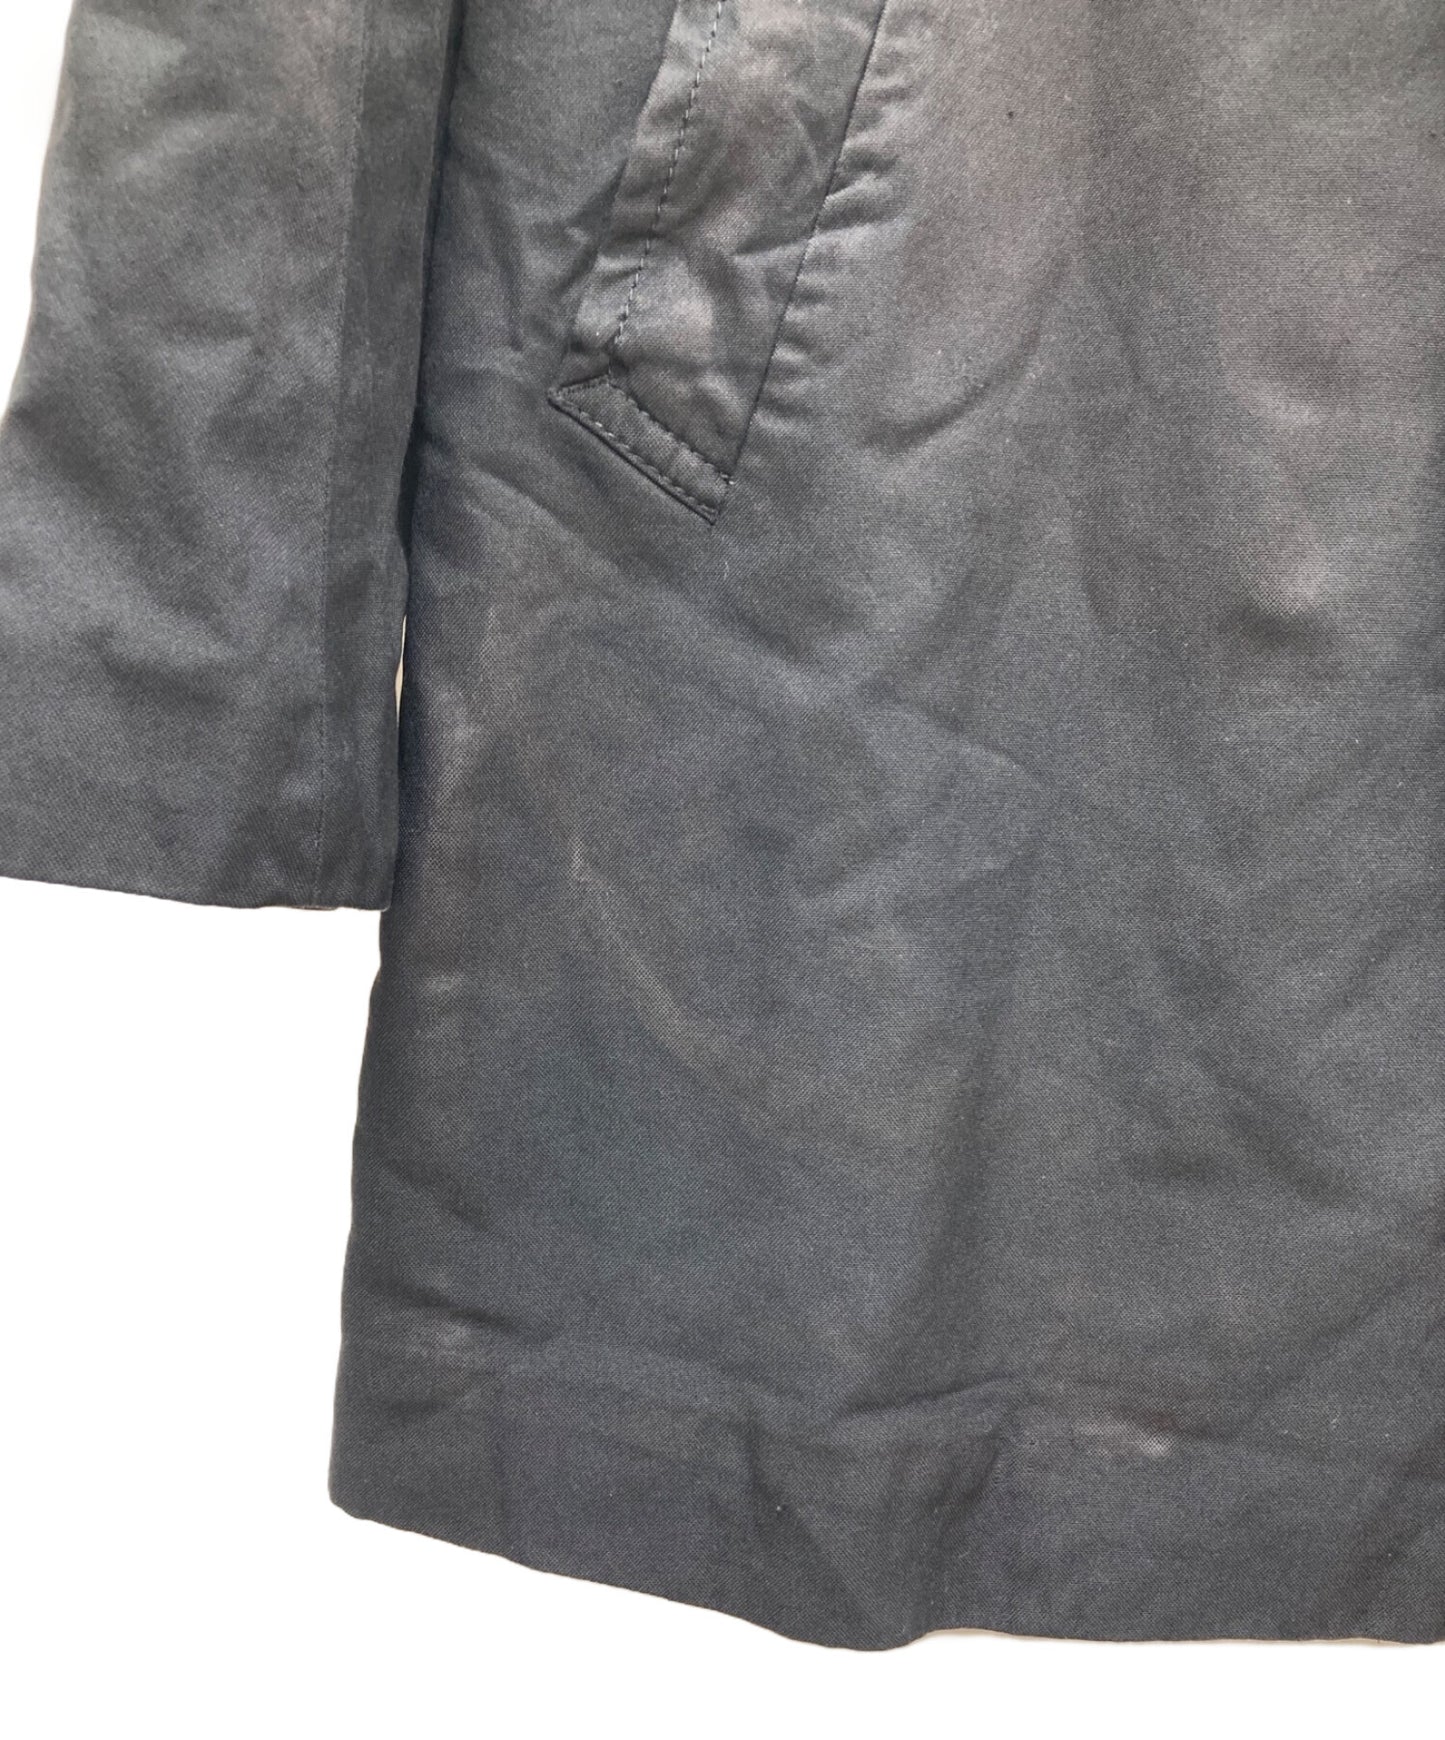 [Pre-owned] COMME des GARCONS stenkler coat DO-C002